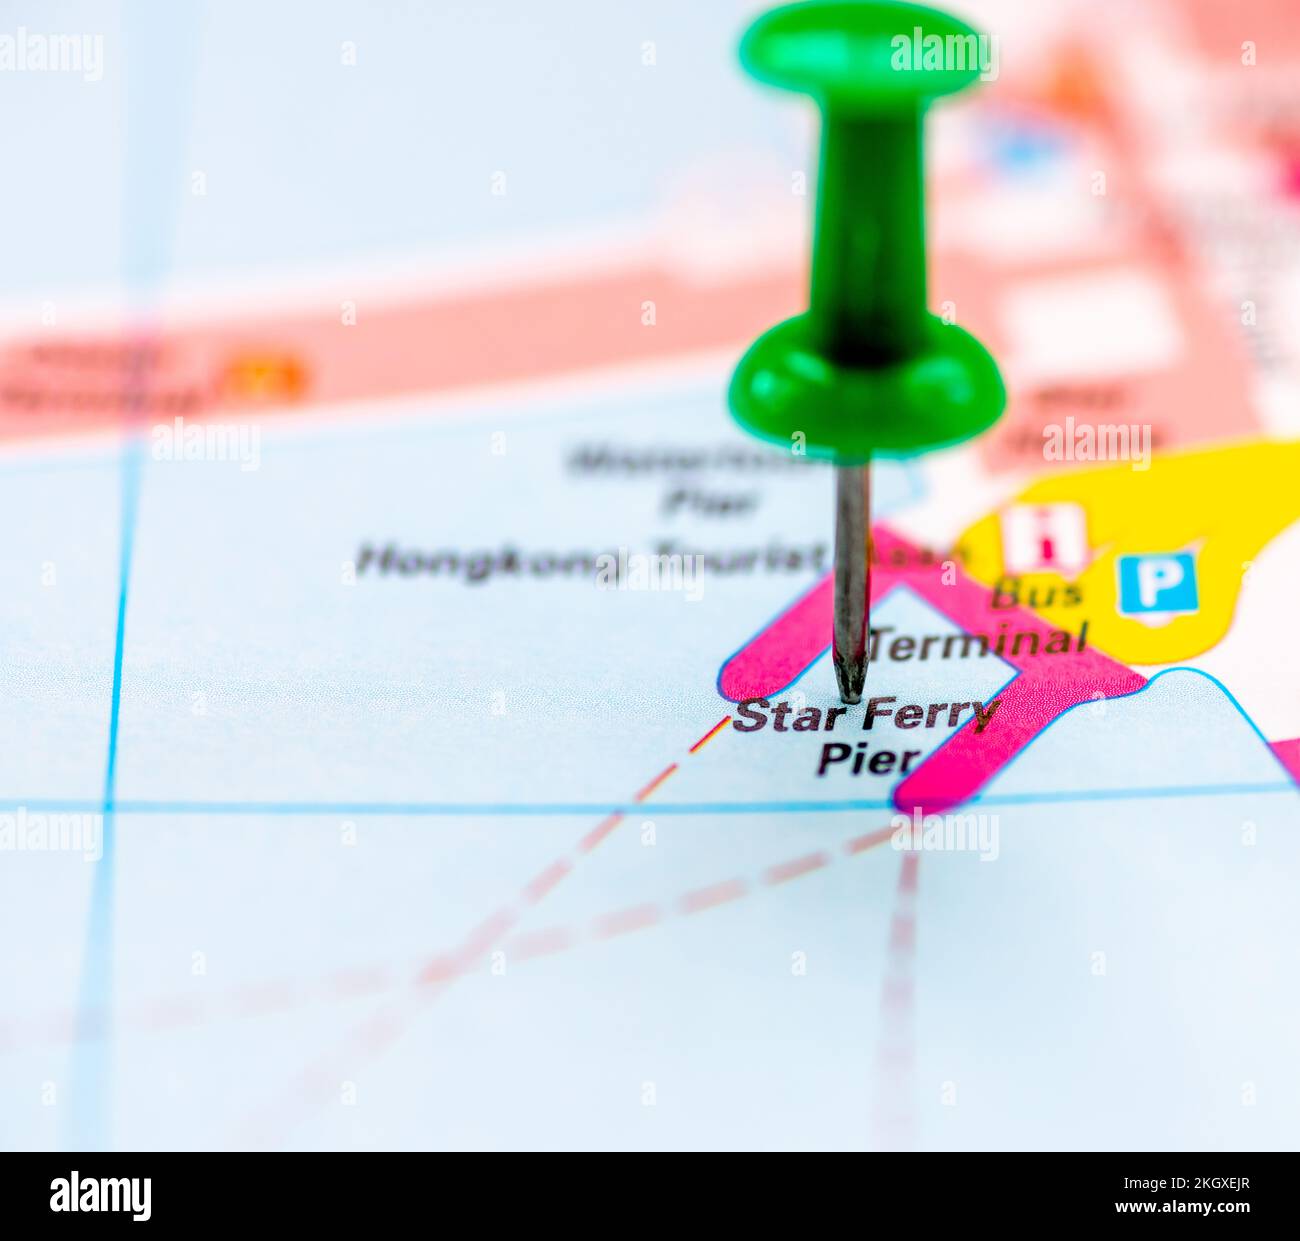 El mapa de ubicación del muelle Star Ferry, Hong kong, China, marcado con una chincheta verde. Foto de stock